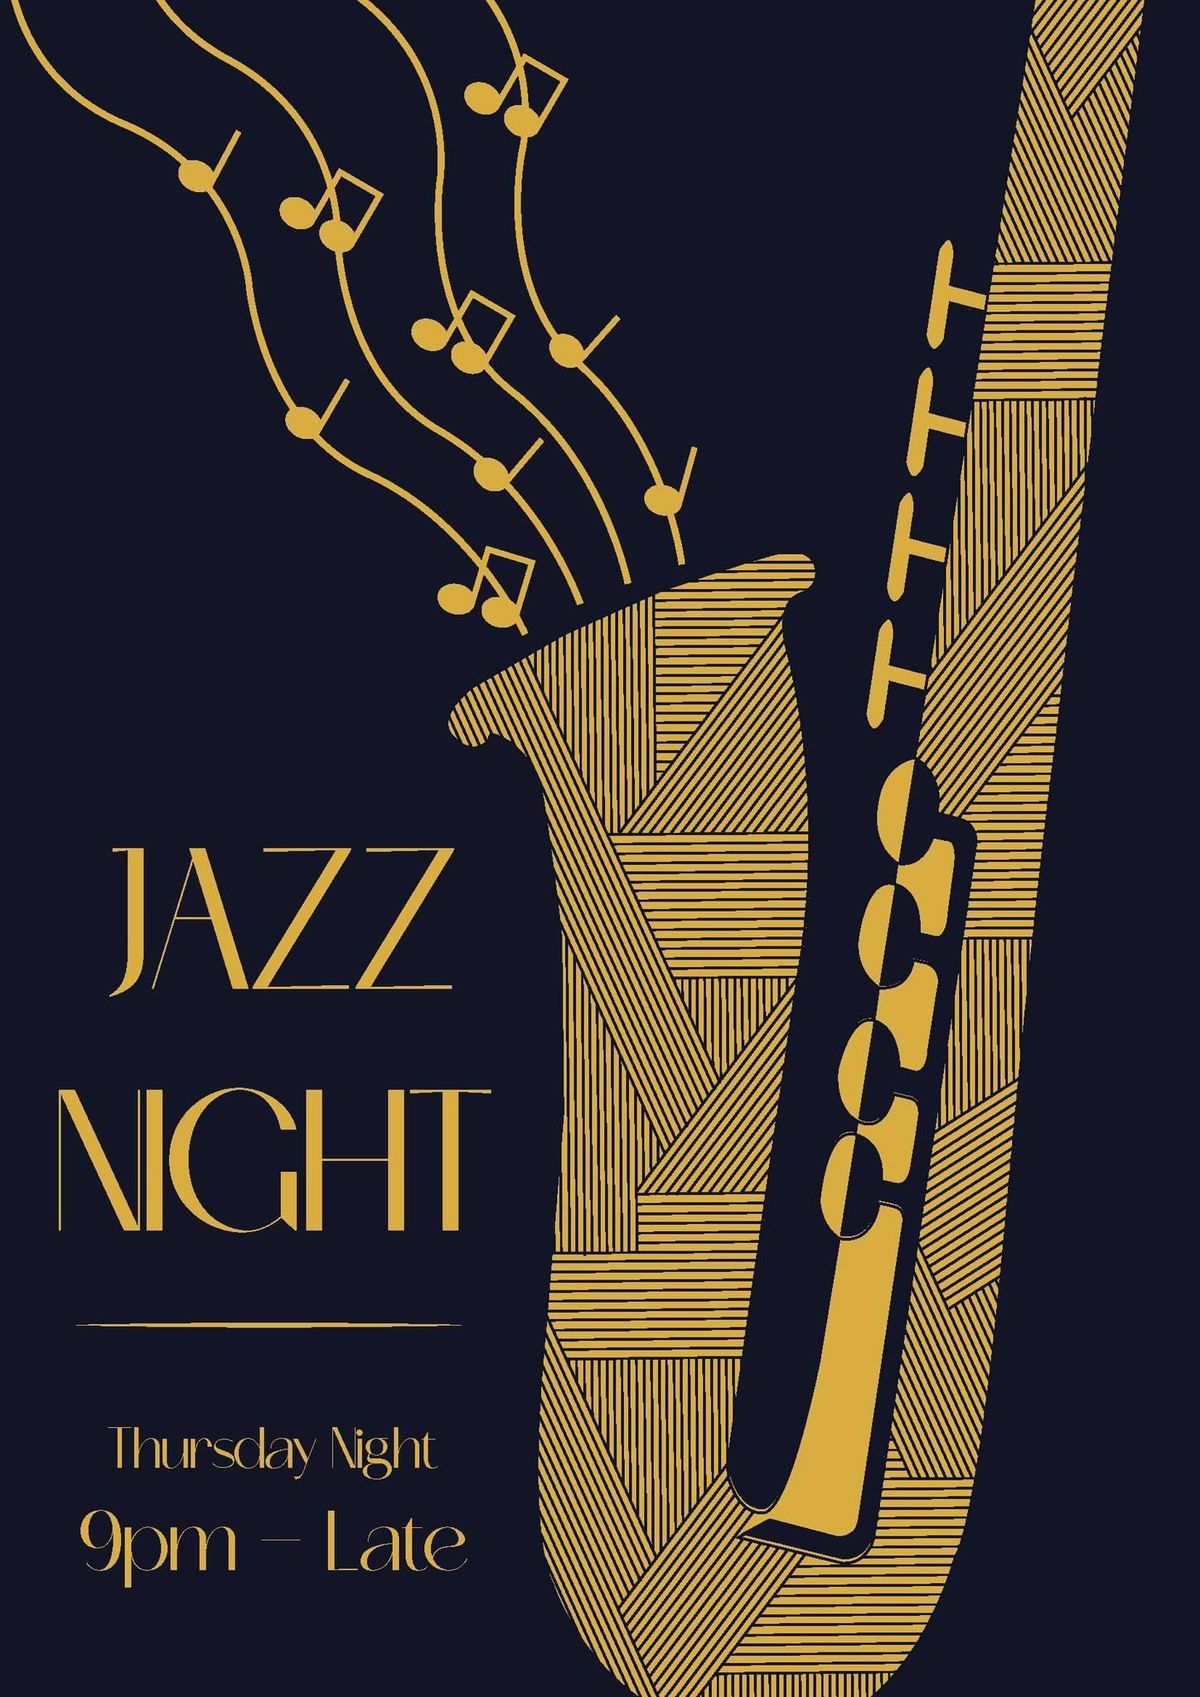 Jazz night @ Peque\u00f1o